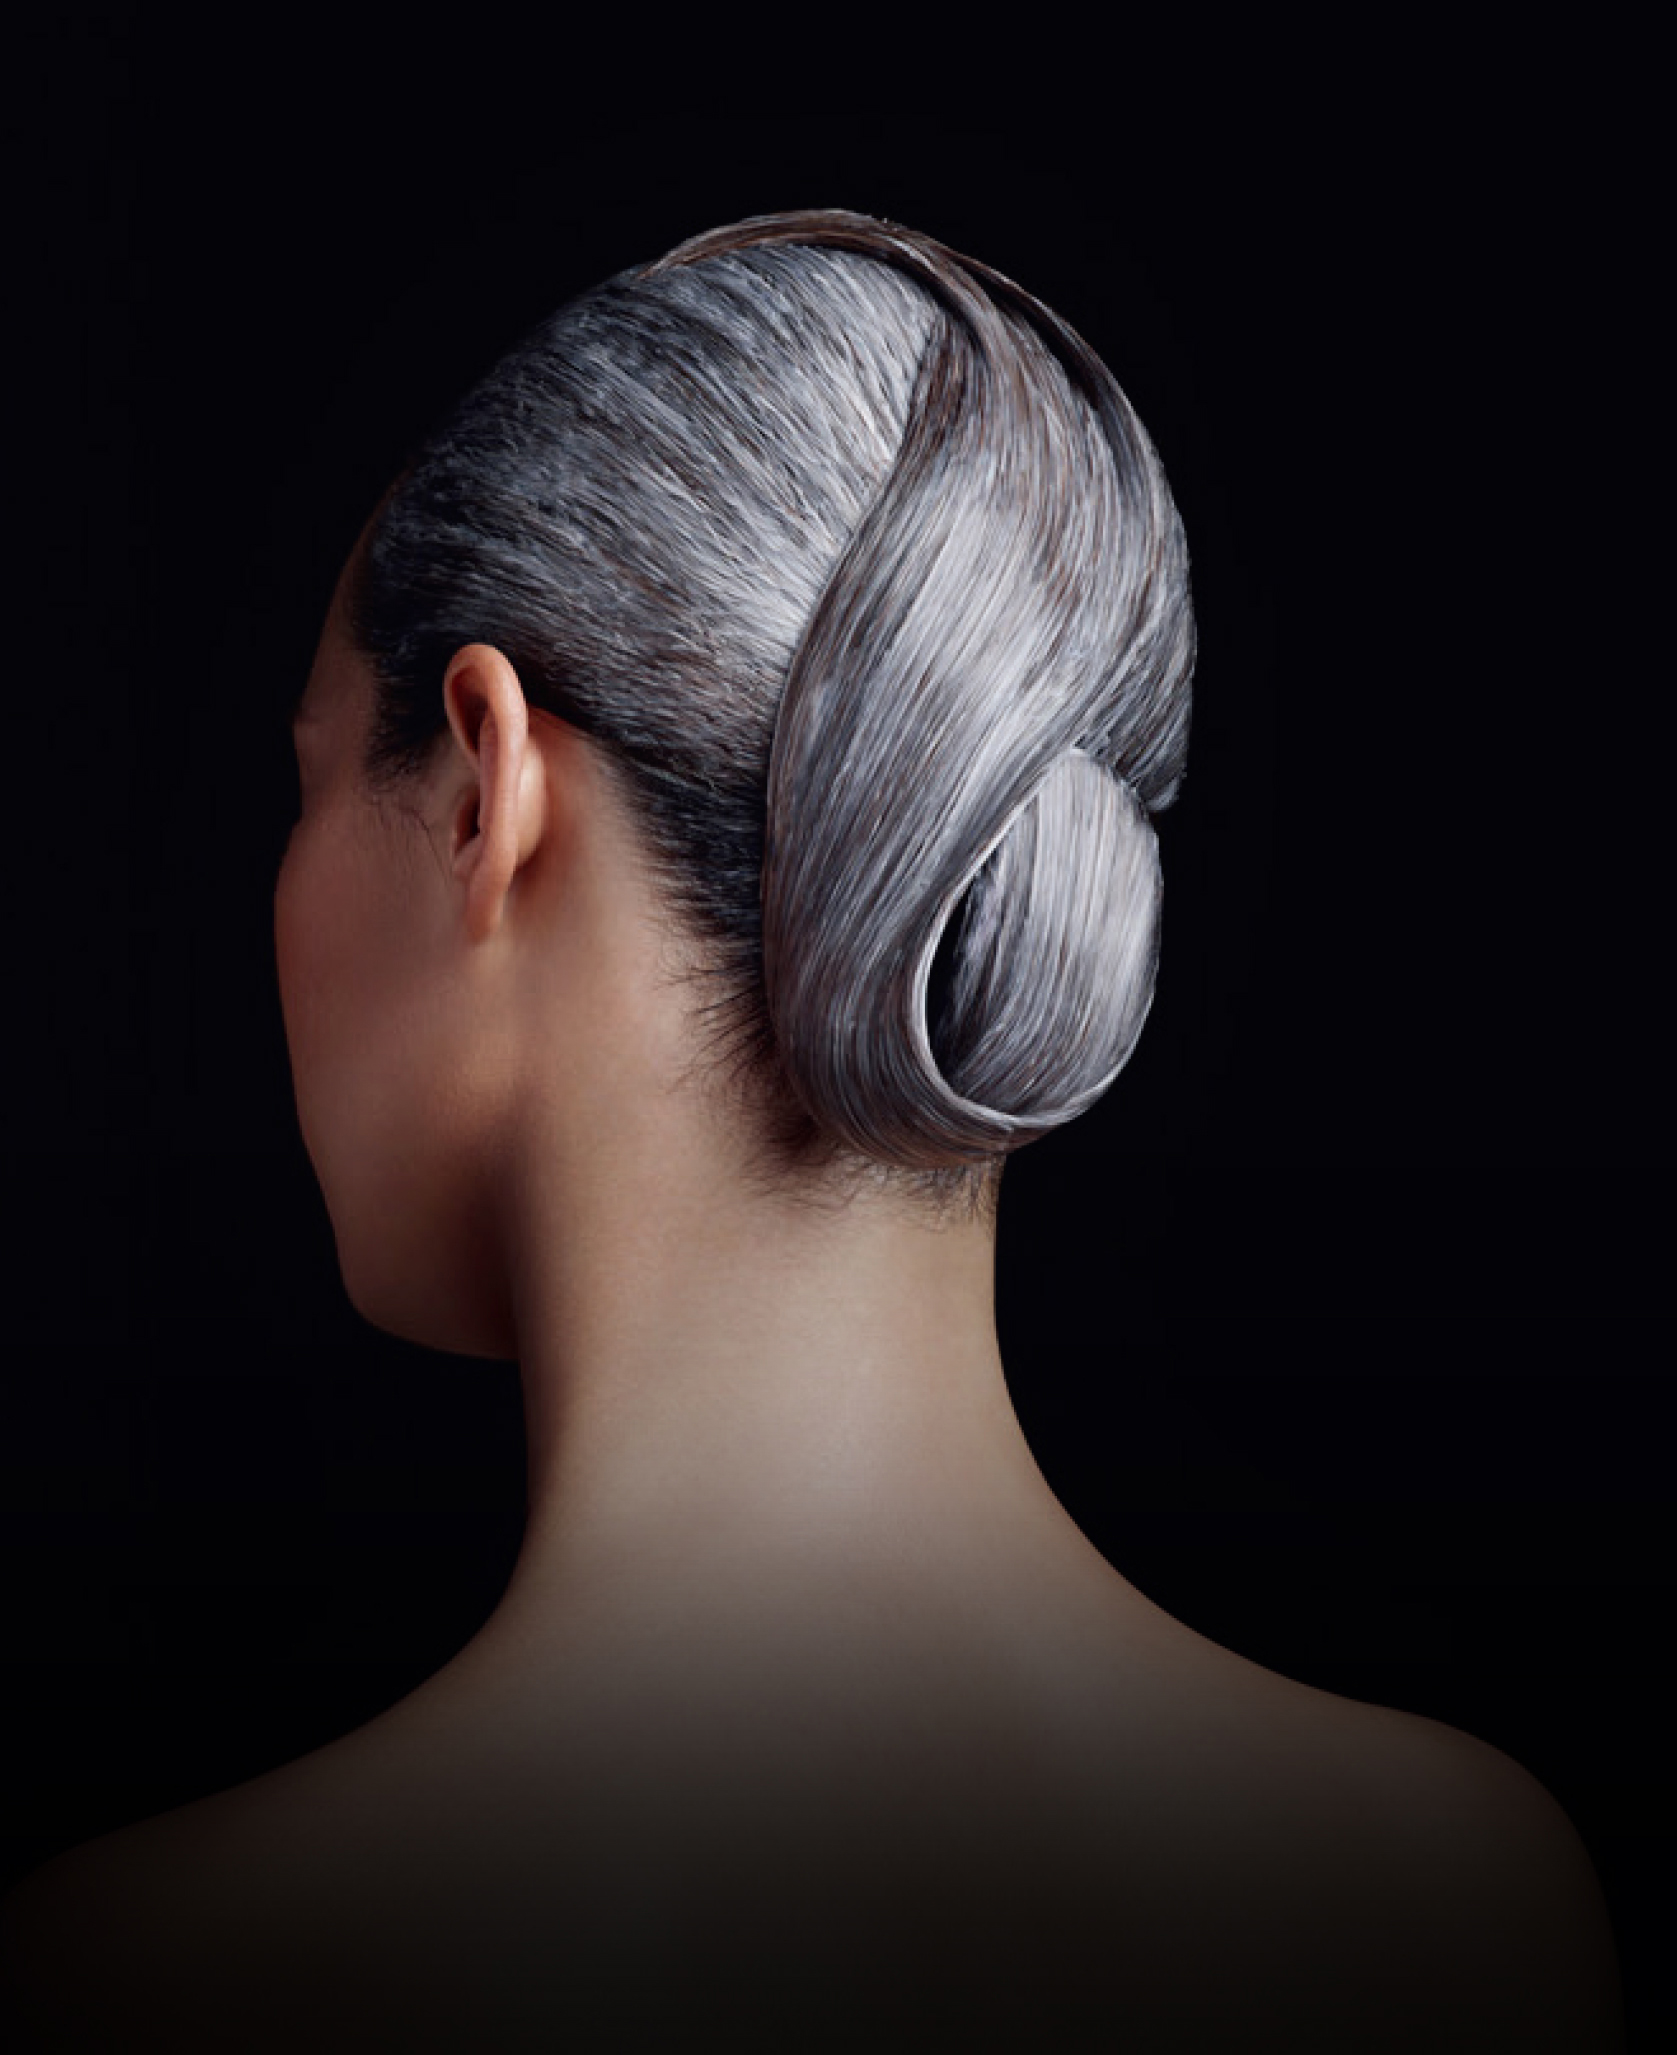 007龐德女郎蕾雅瑟杜愛用髮品OPALIS_拿破崙帝政時代養髮秘方再進化19.jpg